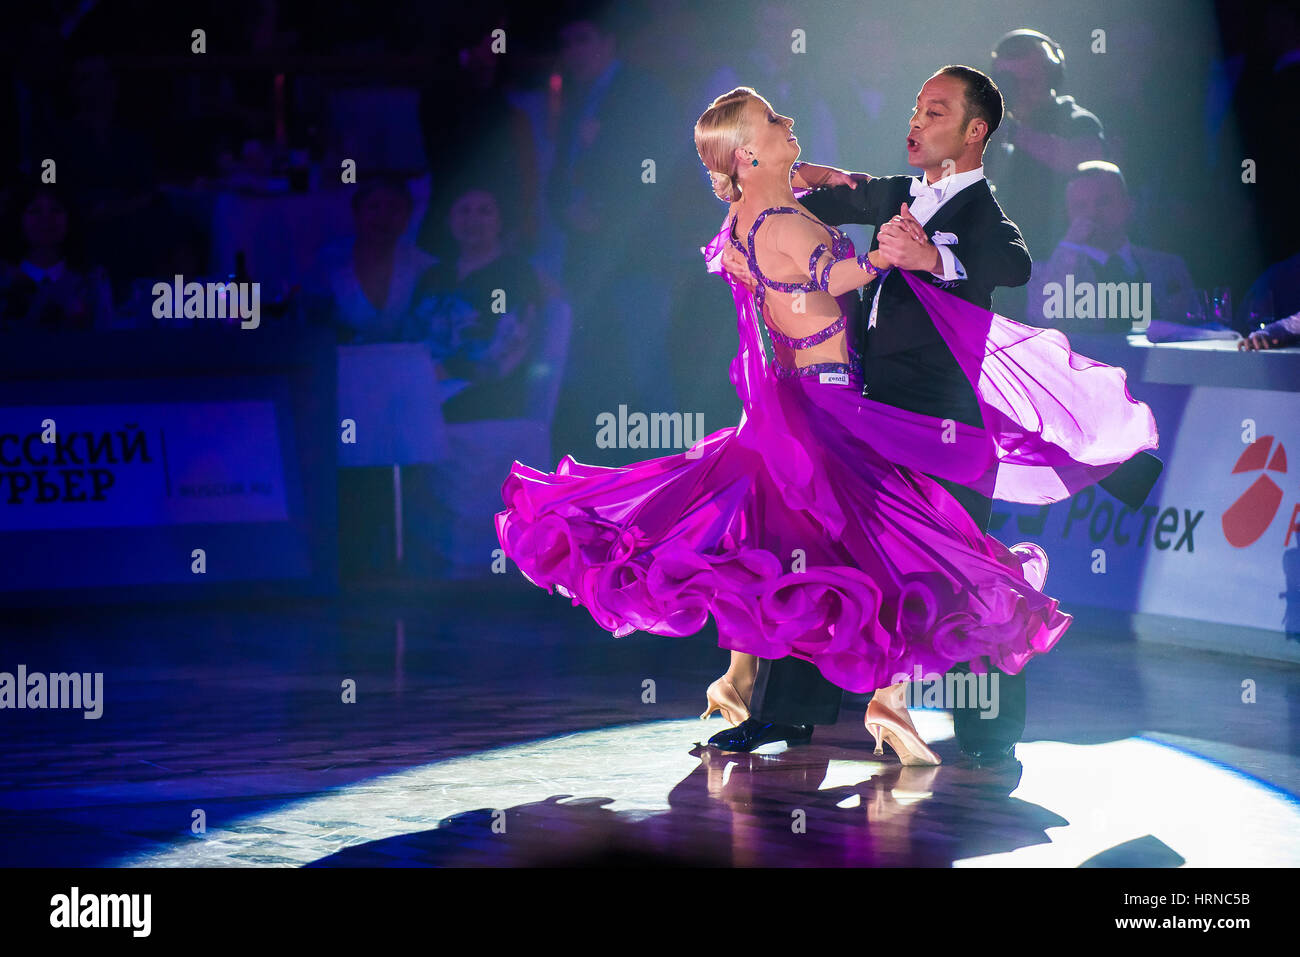 Moscou, Russie - Apr 26, 2015 : Couple fonctionne à l'événement de danse de bal à l'Open 2015 Championnat de l'Amérique latine professionnel européen. Banque D'Images